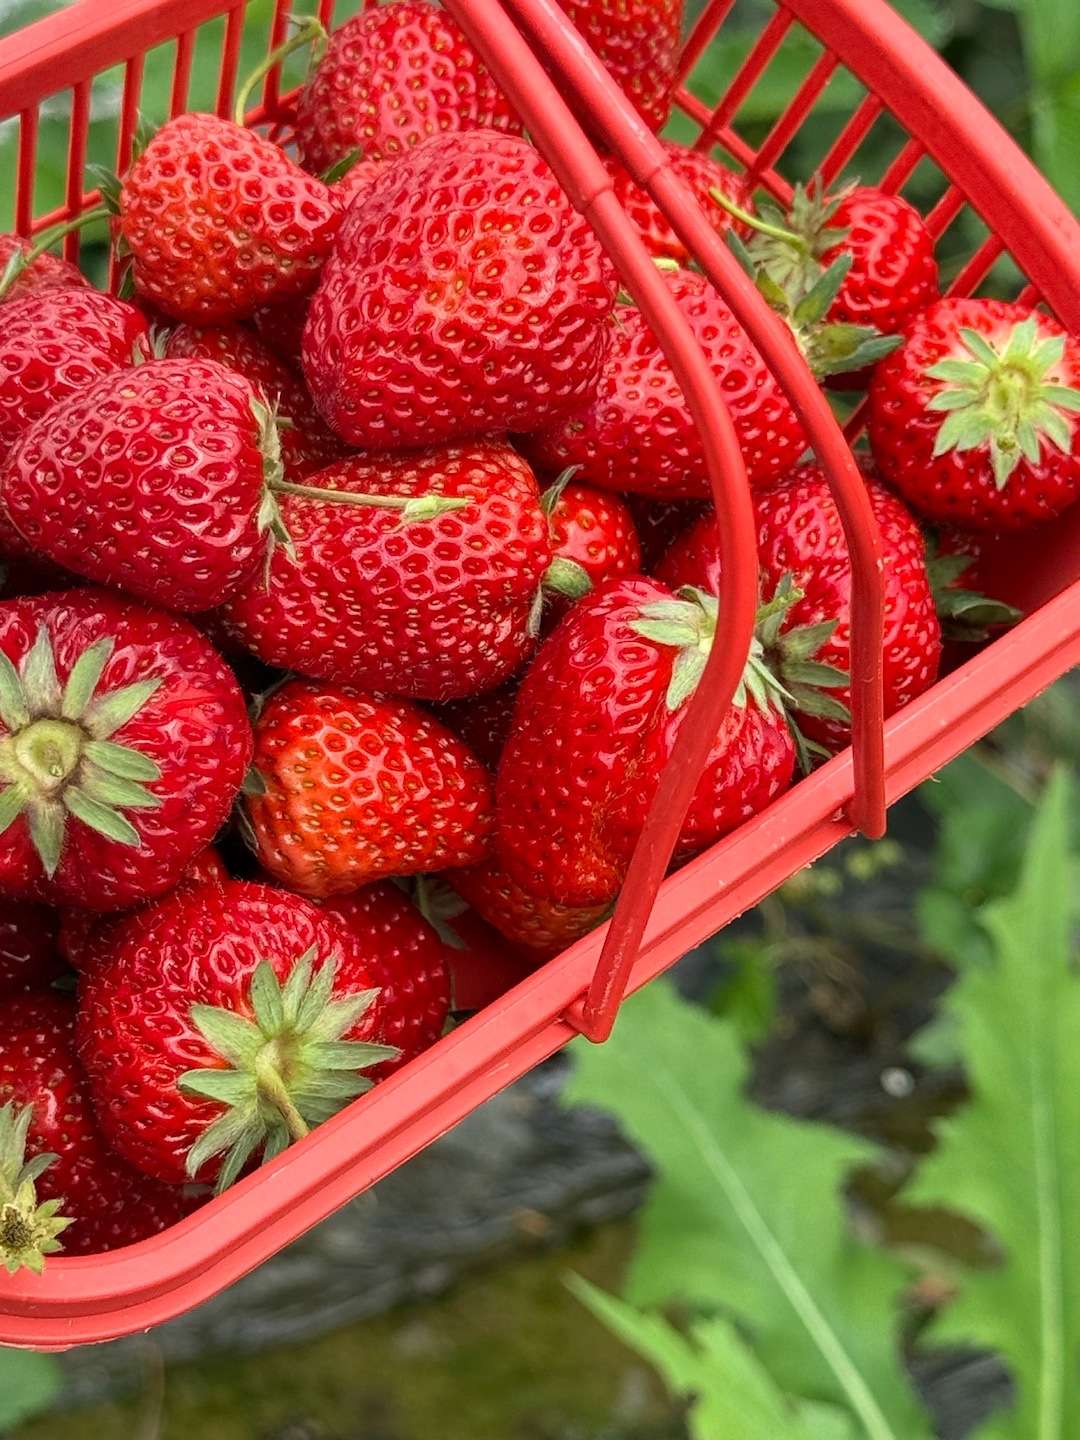 又到了摘草莓的季节了～～